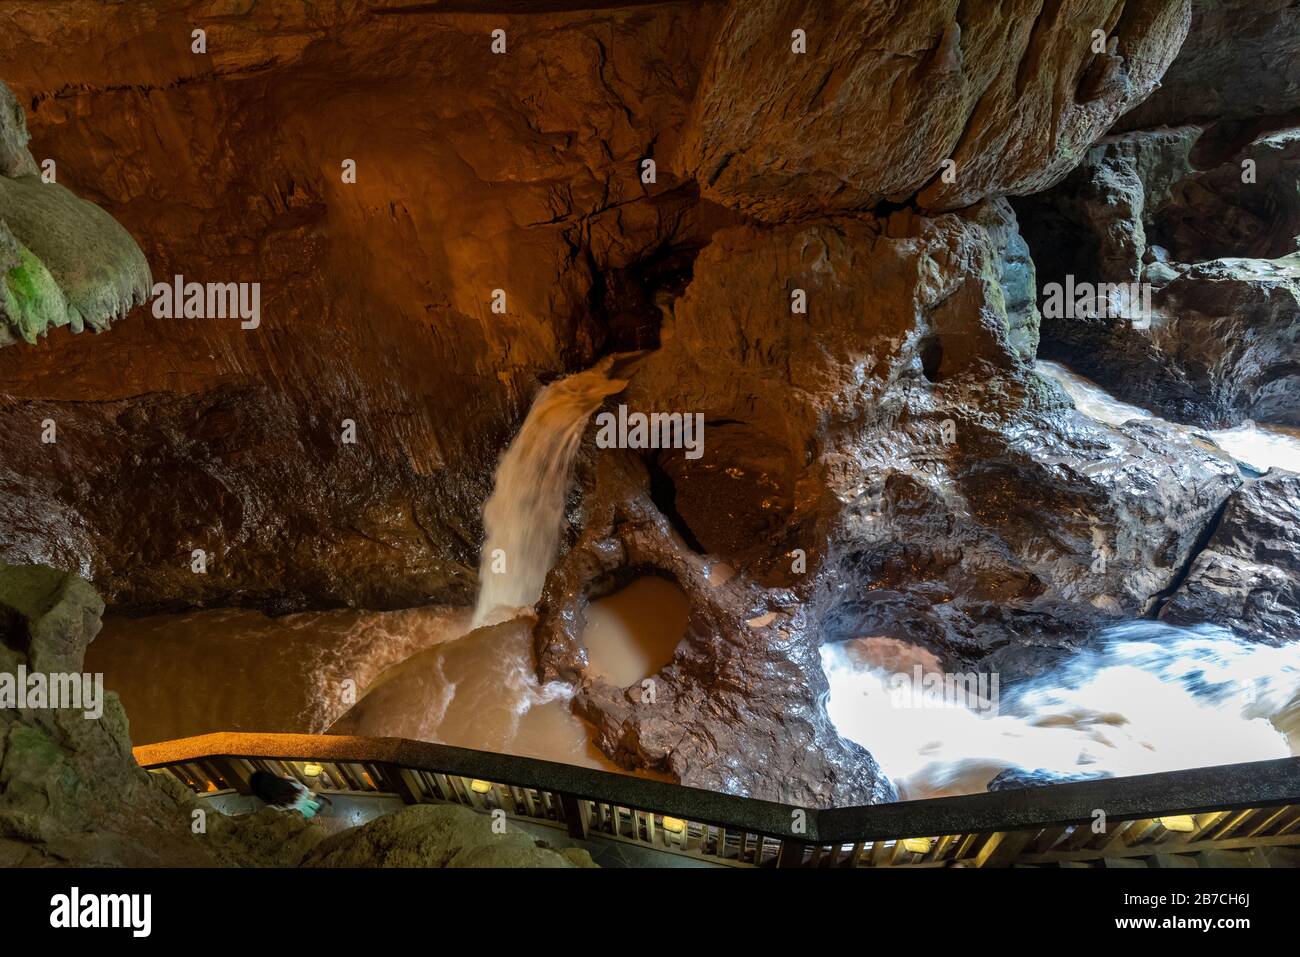 Les chutes d'eau volantes pour femmes et hommes, Cíxióng Fēi pù, dans la grotte de Dragon (Wòlóng Dòng) située dans la gorge et la grotte de Jiuxiang, ont été utilisées dans le film de Jackie Chan Myth. Banque D'Images